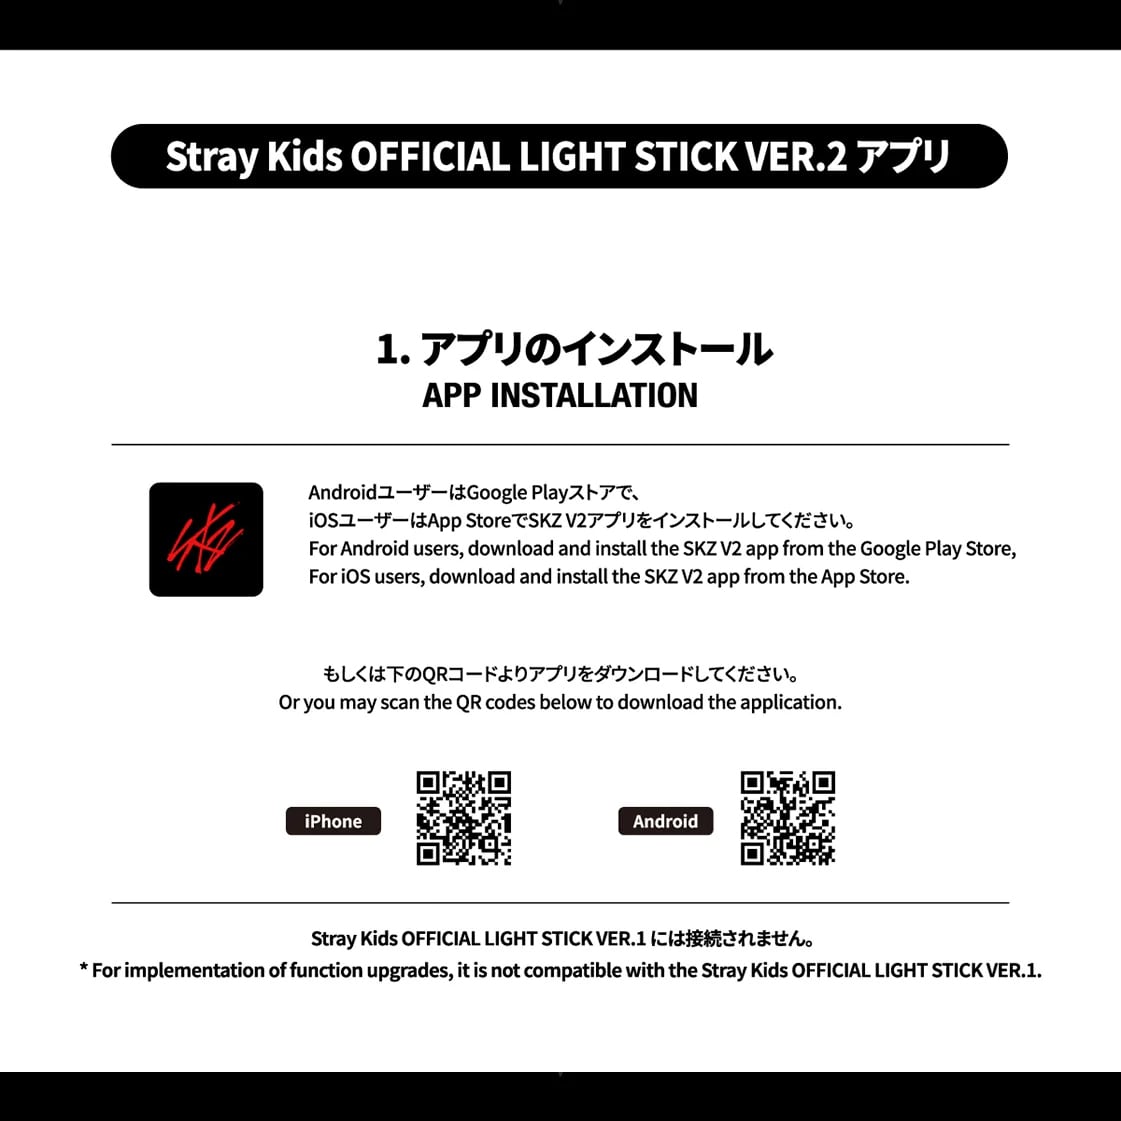 新品公式 StrayKids ペンライト ver.2 2台light stick